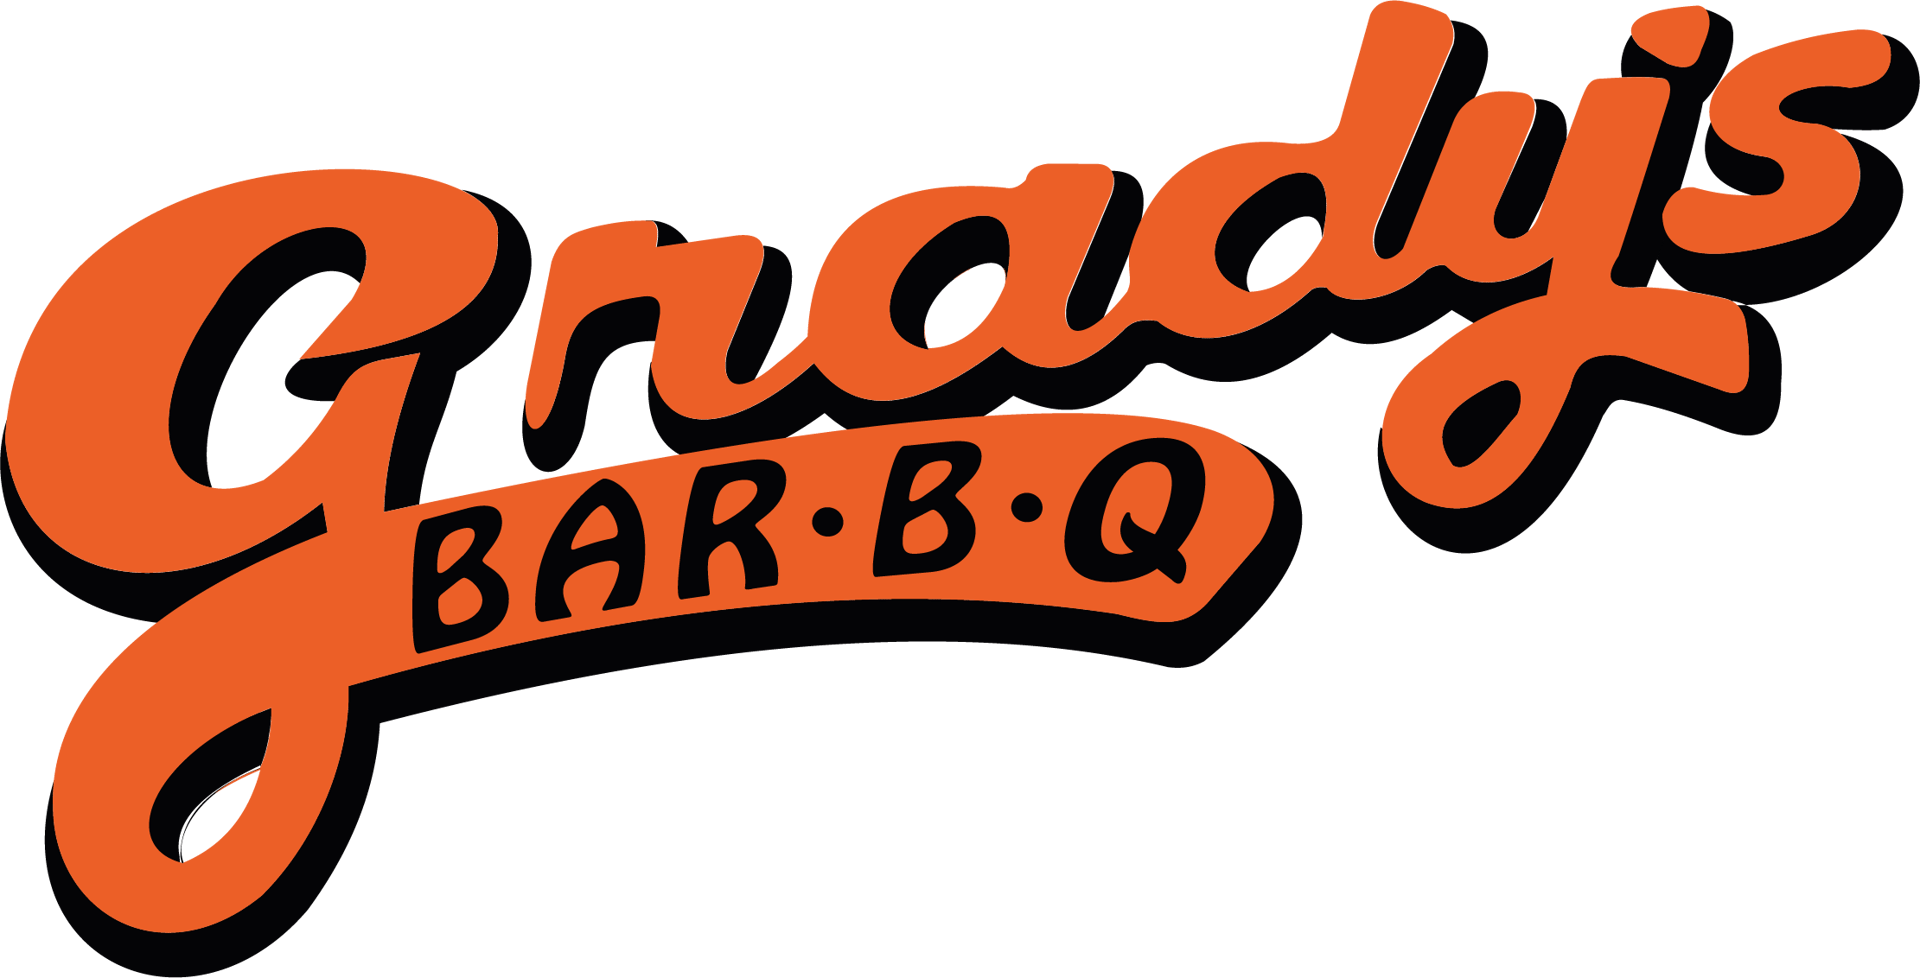 Grady's Bar B Q